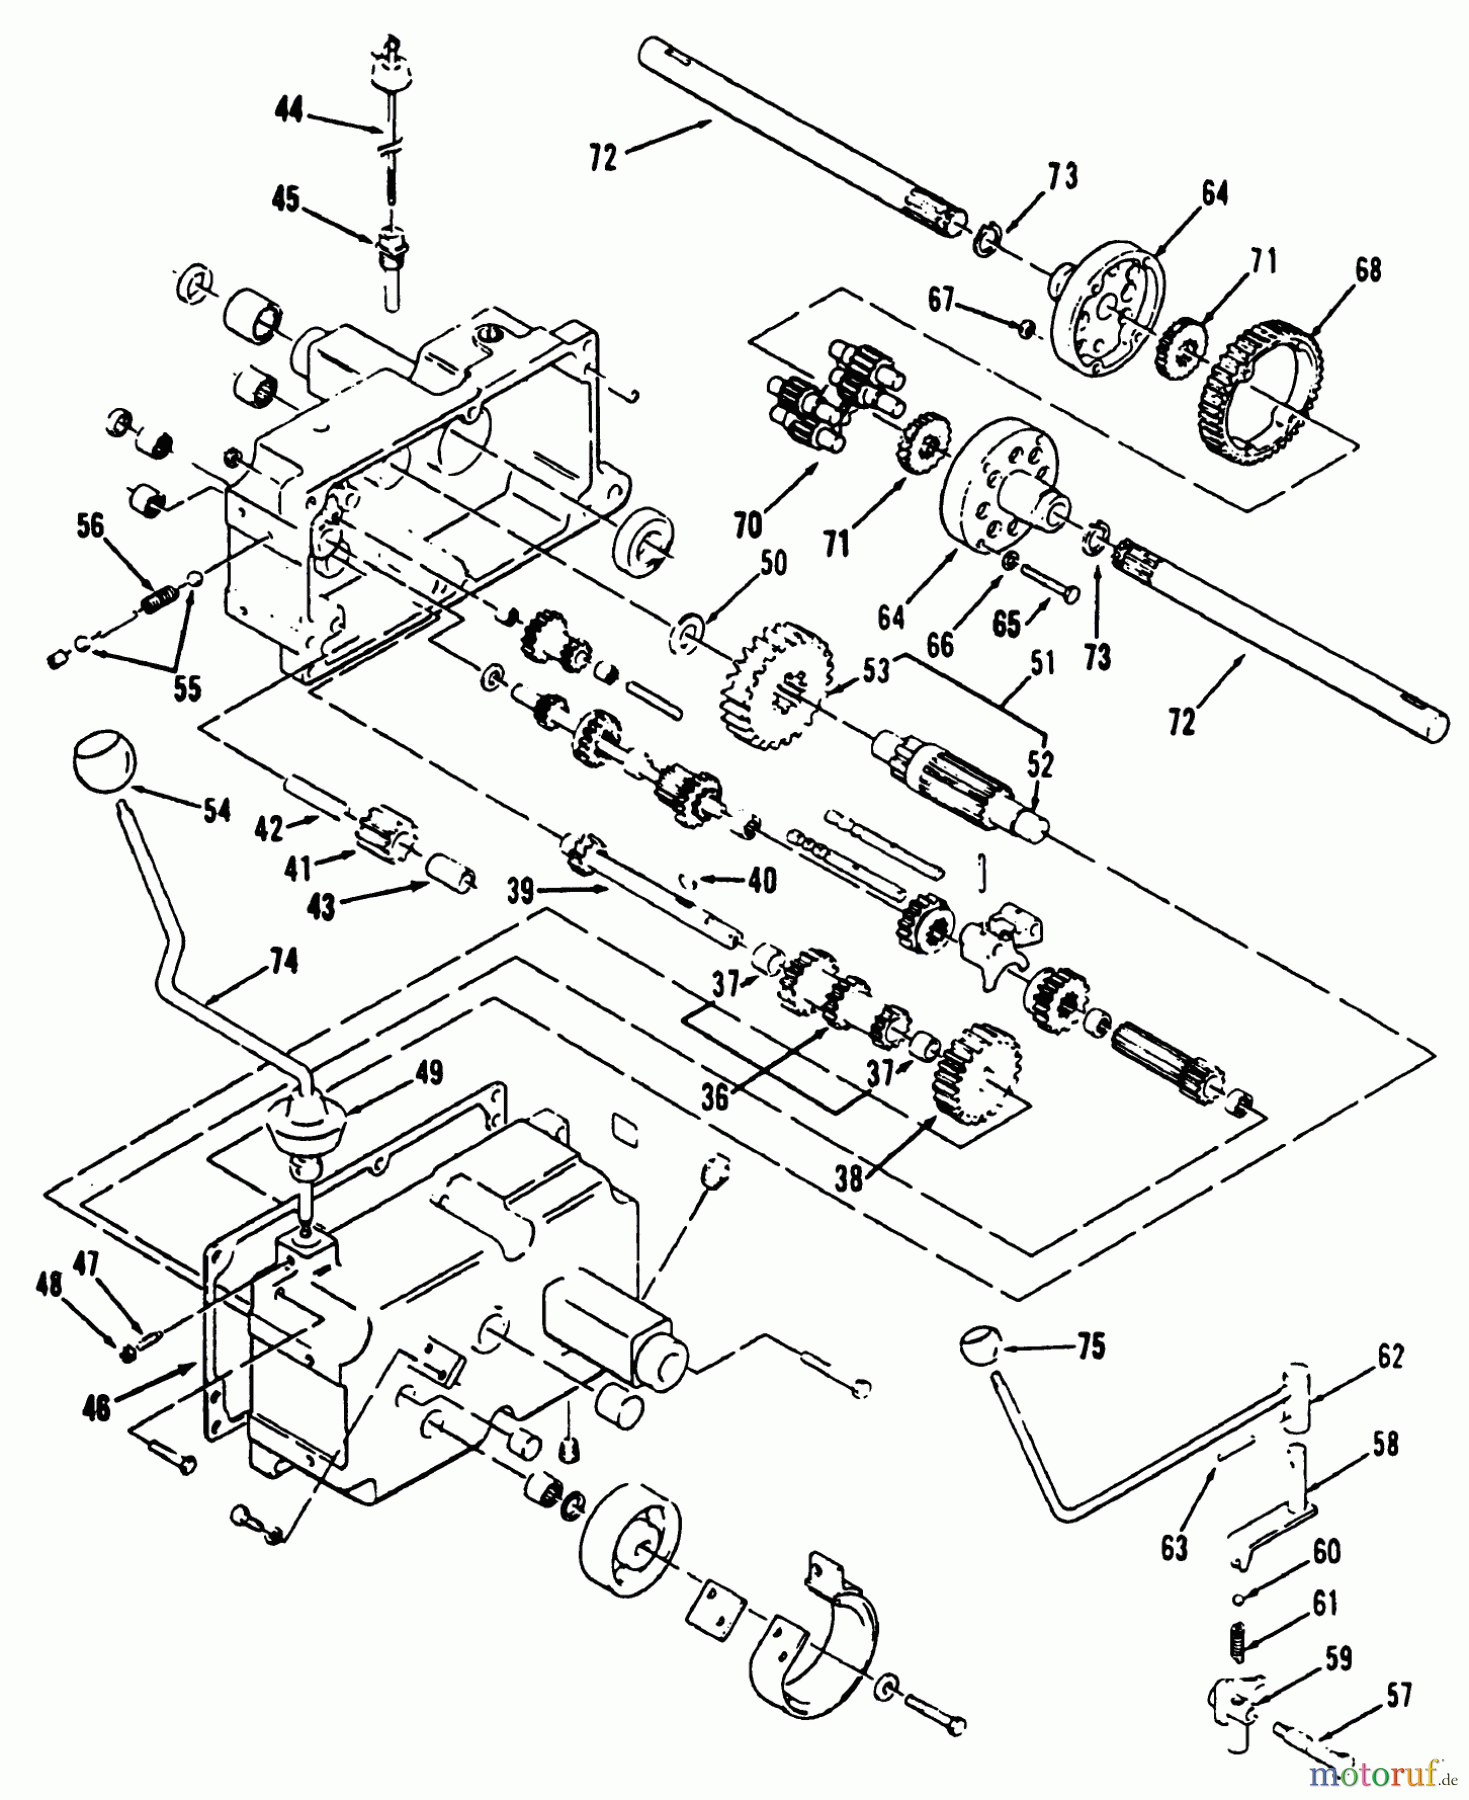  Toro Neu Mowers, Lawn & Garden Tractor Seite 1 31-12K804 (312-8) - Toro 312-8 Garden Tractor, 1992 (2000001-2999999) MECHANICAL TRANSMISSION 8-SPEED #2